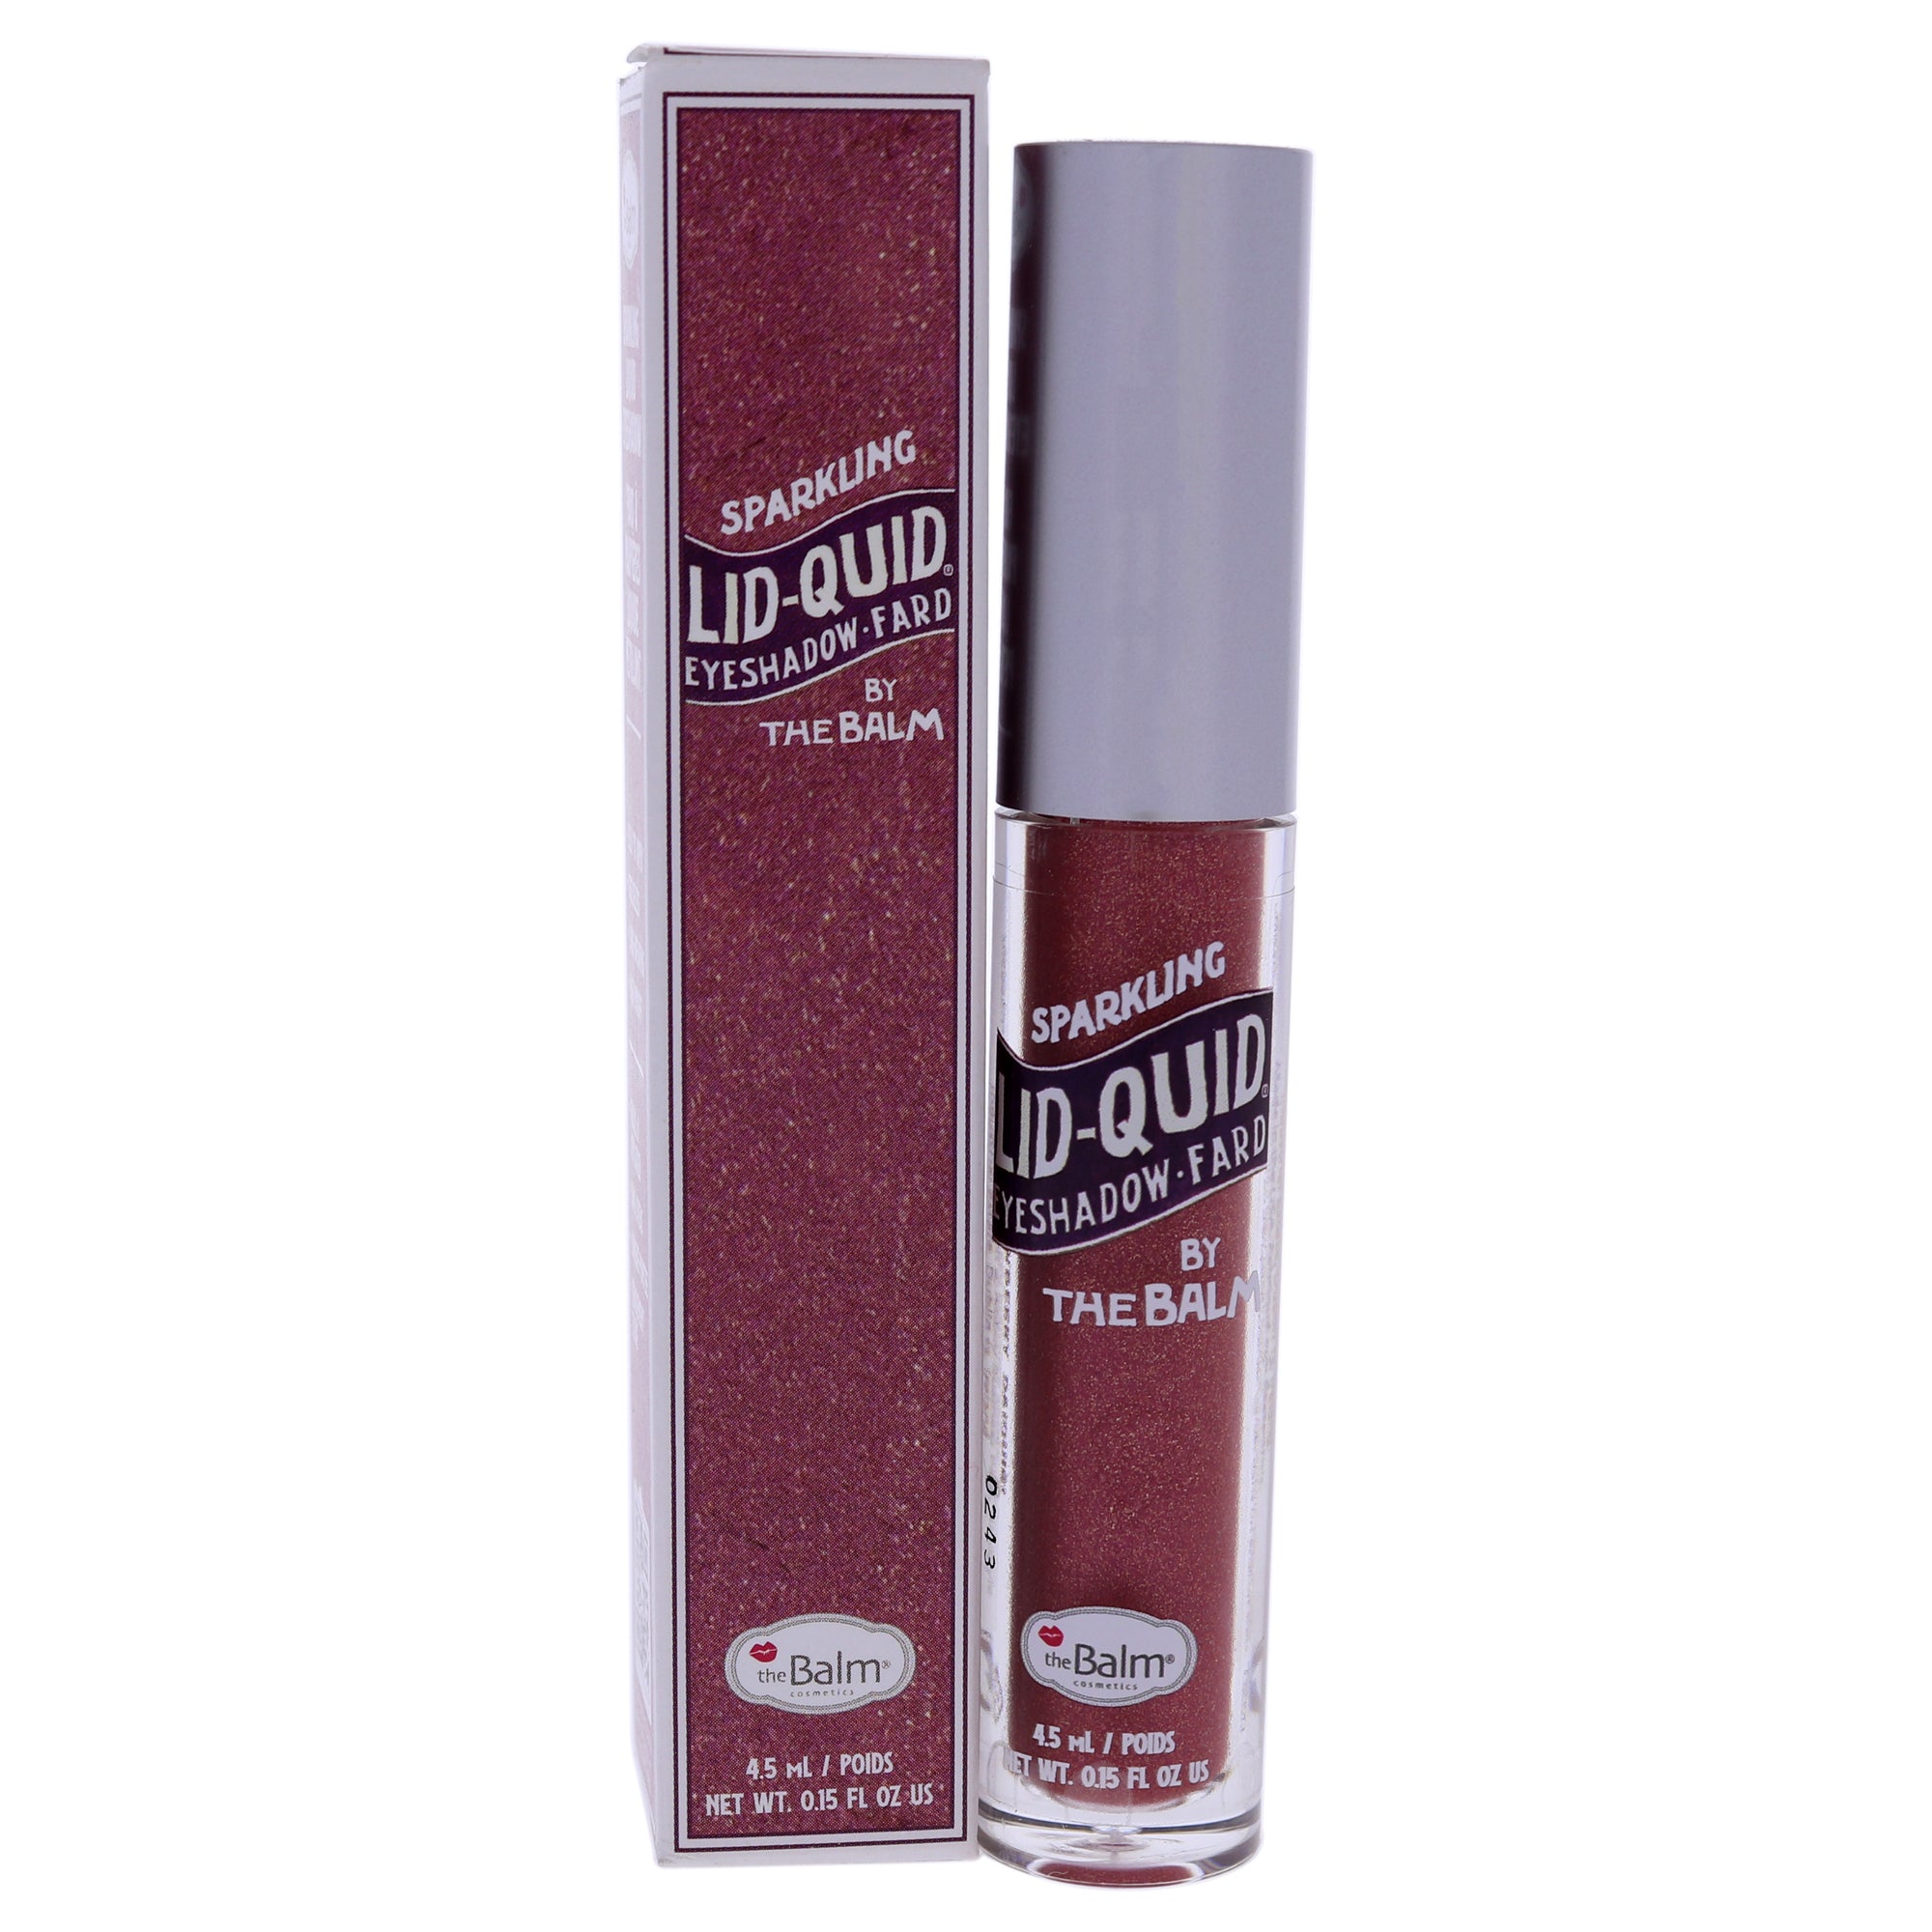 Lid-Quid Sparkling Liquid Eyeshadow - Strawberry Daiquiri by the Balm for Women - 0.15 oz Eyeshadow